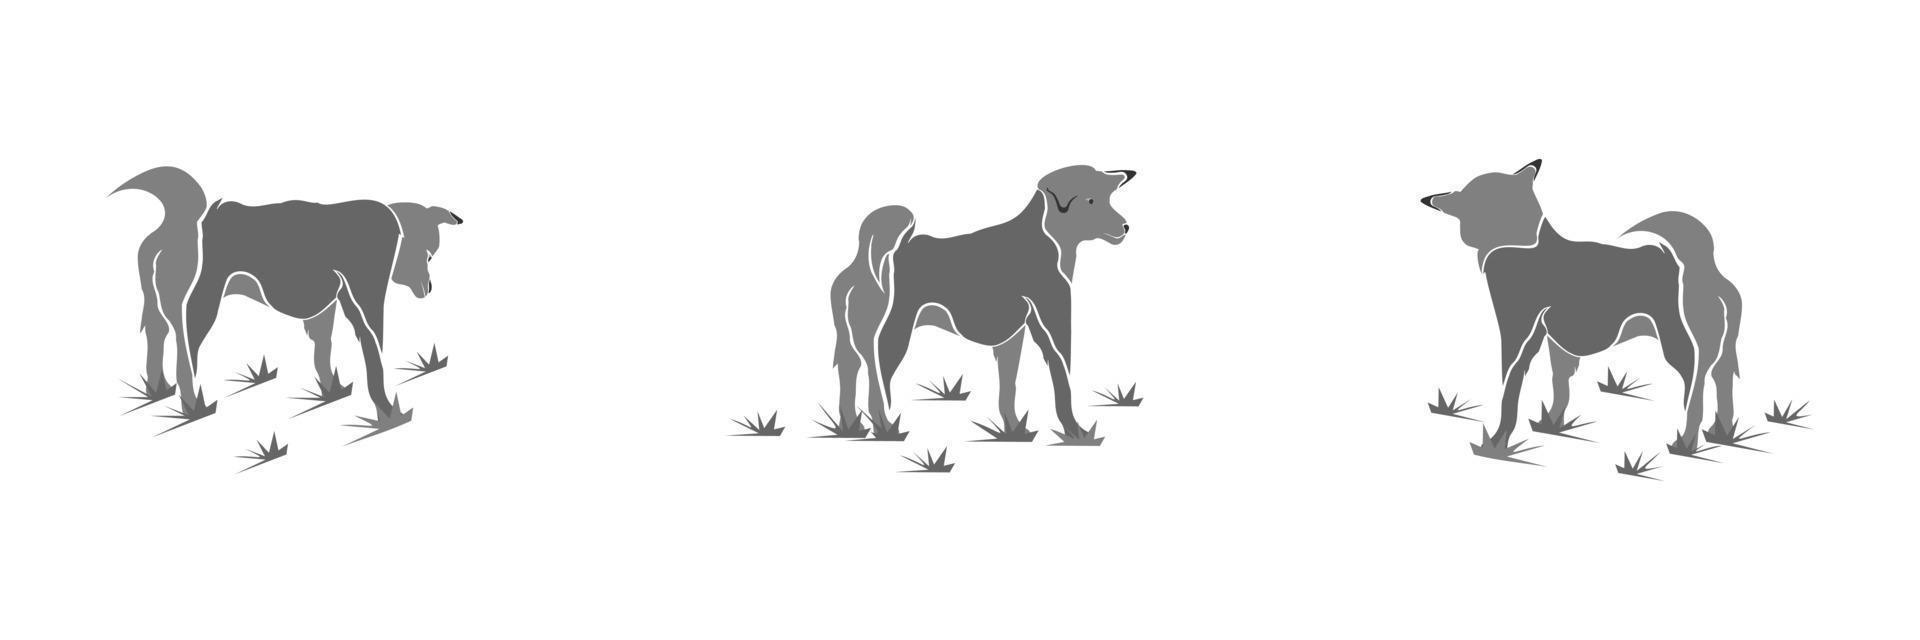 cartone animato cane isolato vettore illustrazione